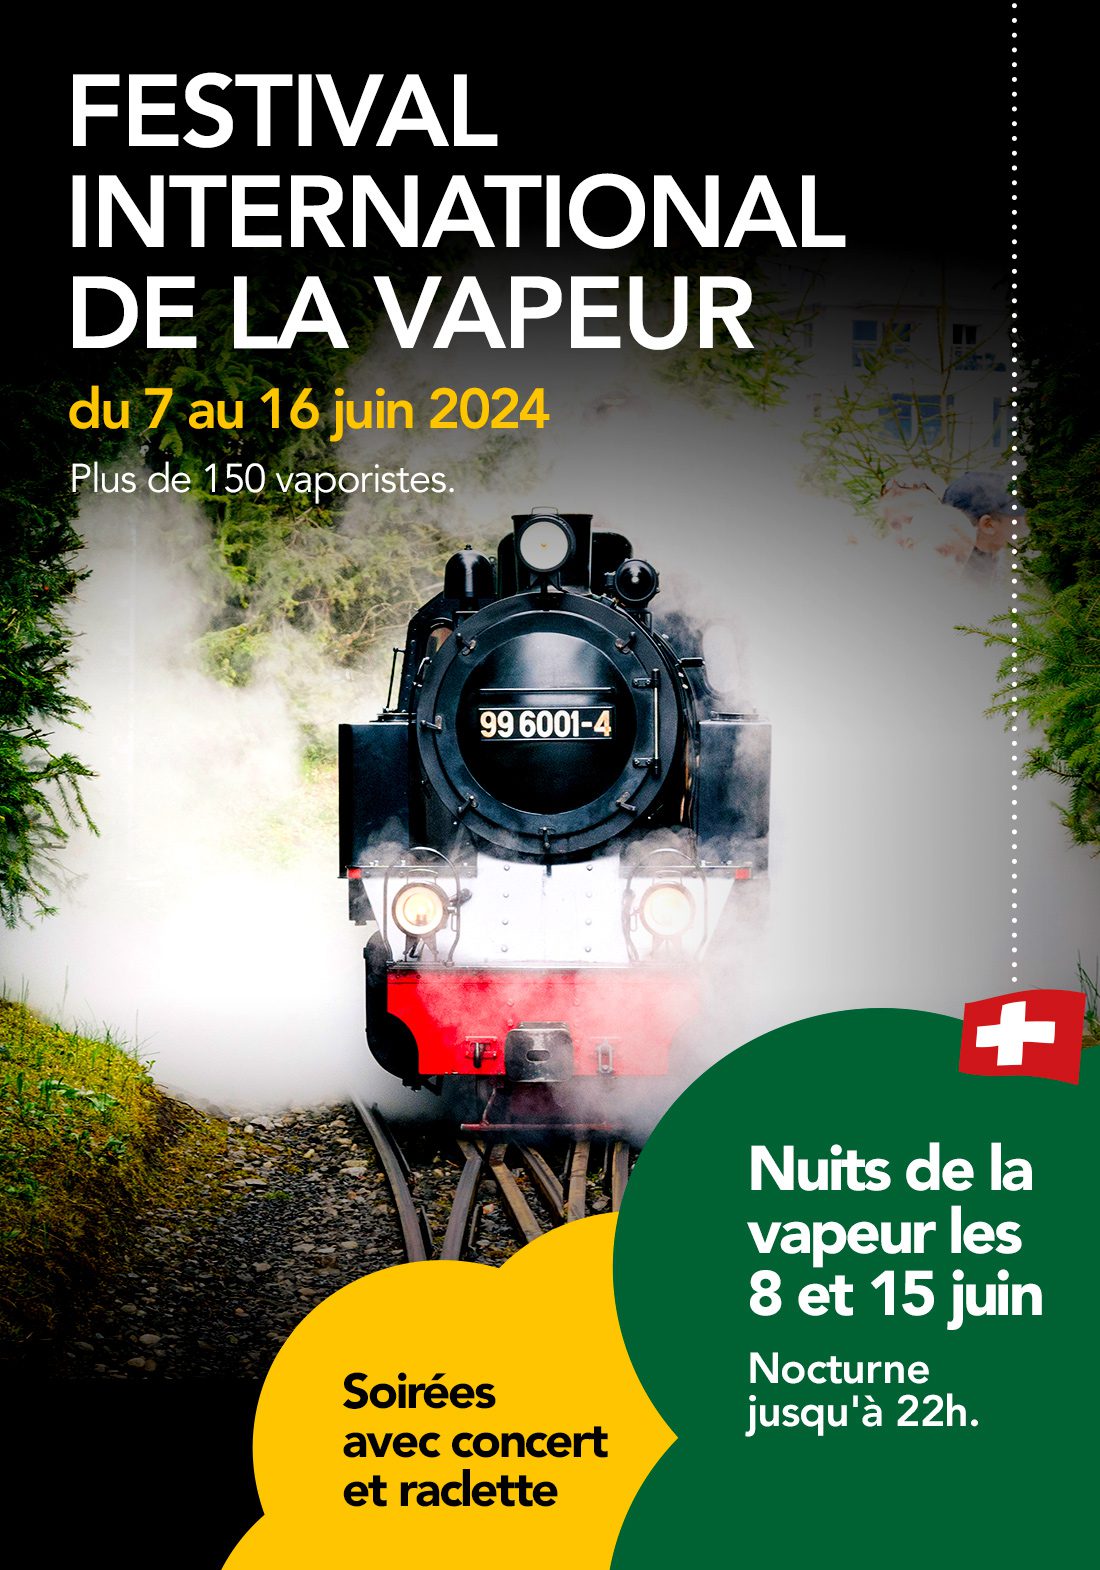 Festival International de la vapeur 2024 - Swiss Vapeur Parc - Le Bouveret